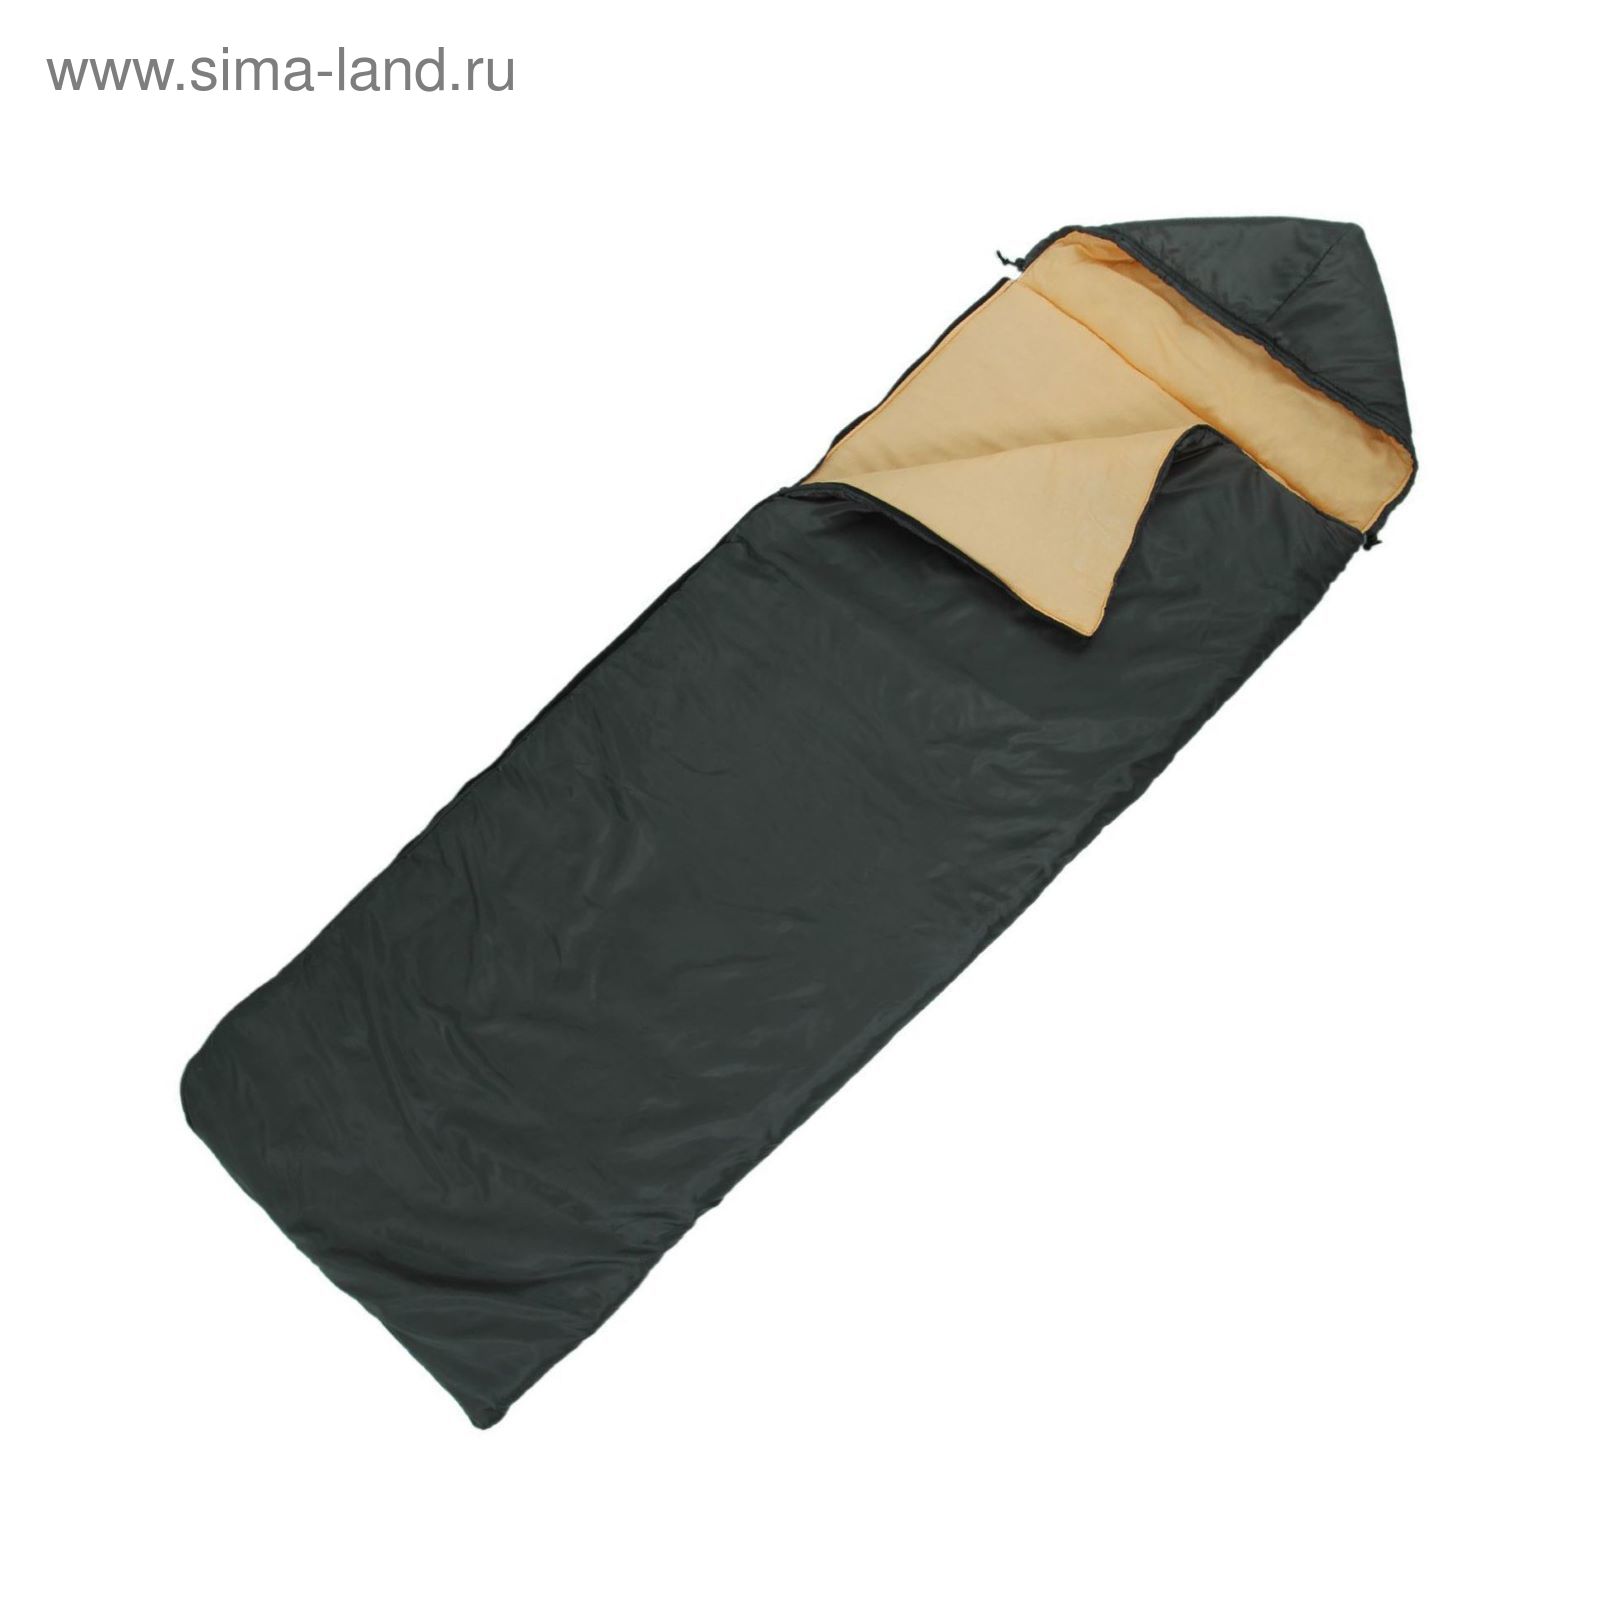 Спальный мешок "Комфорт", 3-х слойный, с капюшоном, размер 225 х 70 см, цвет микс